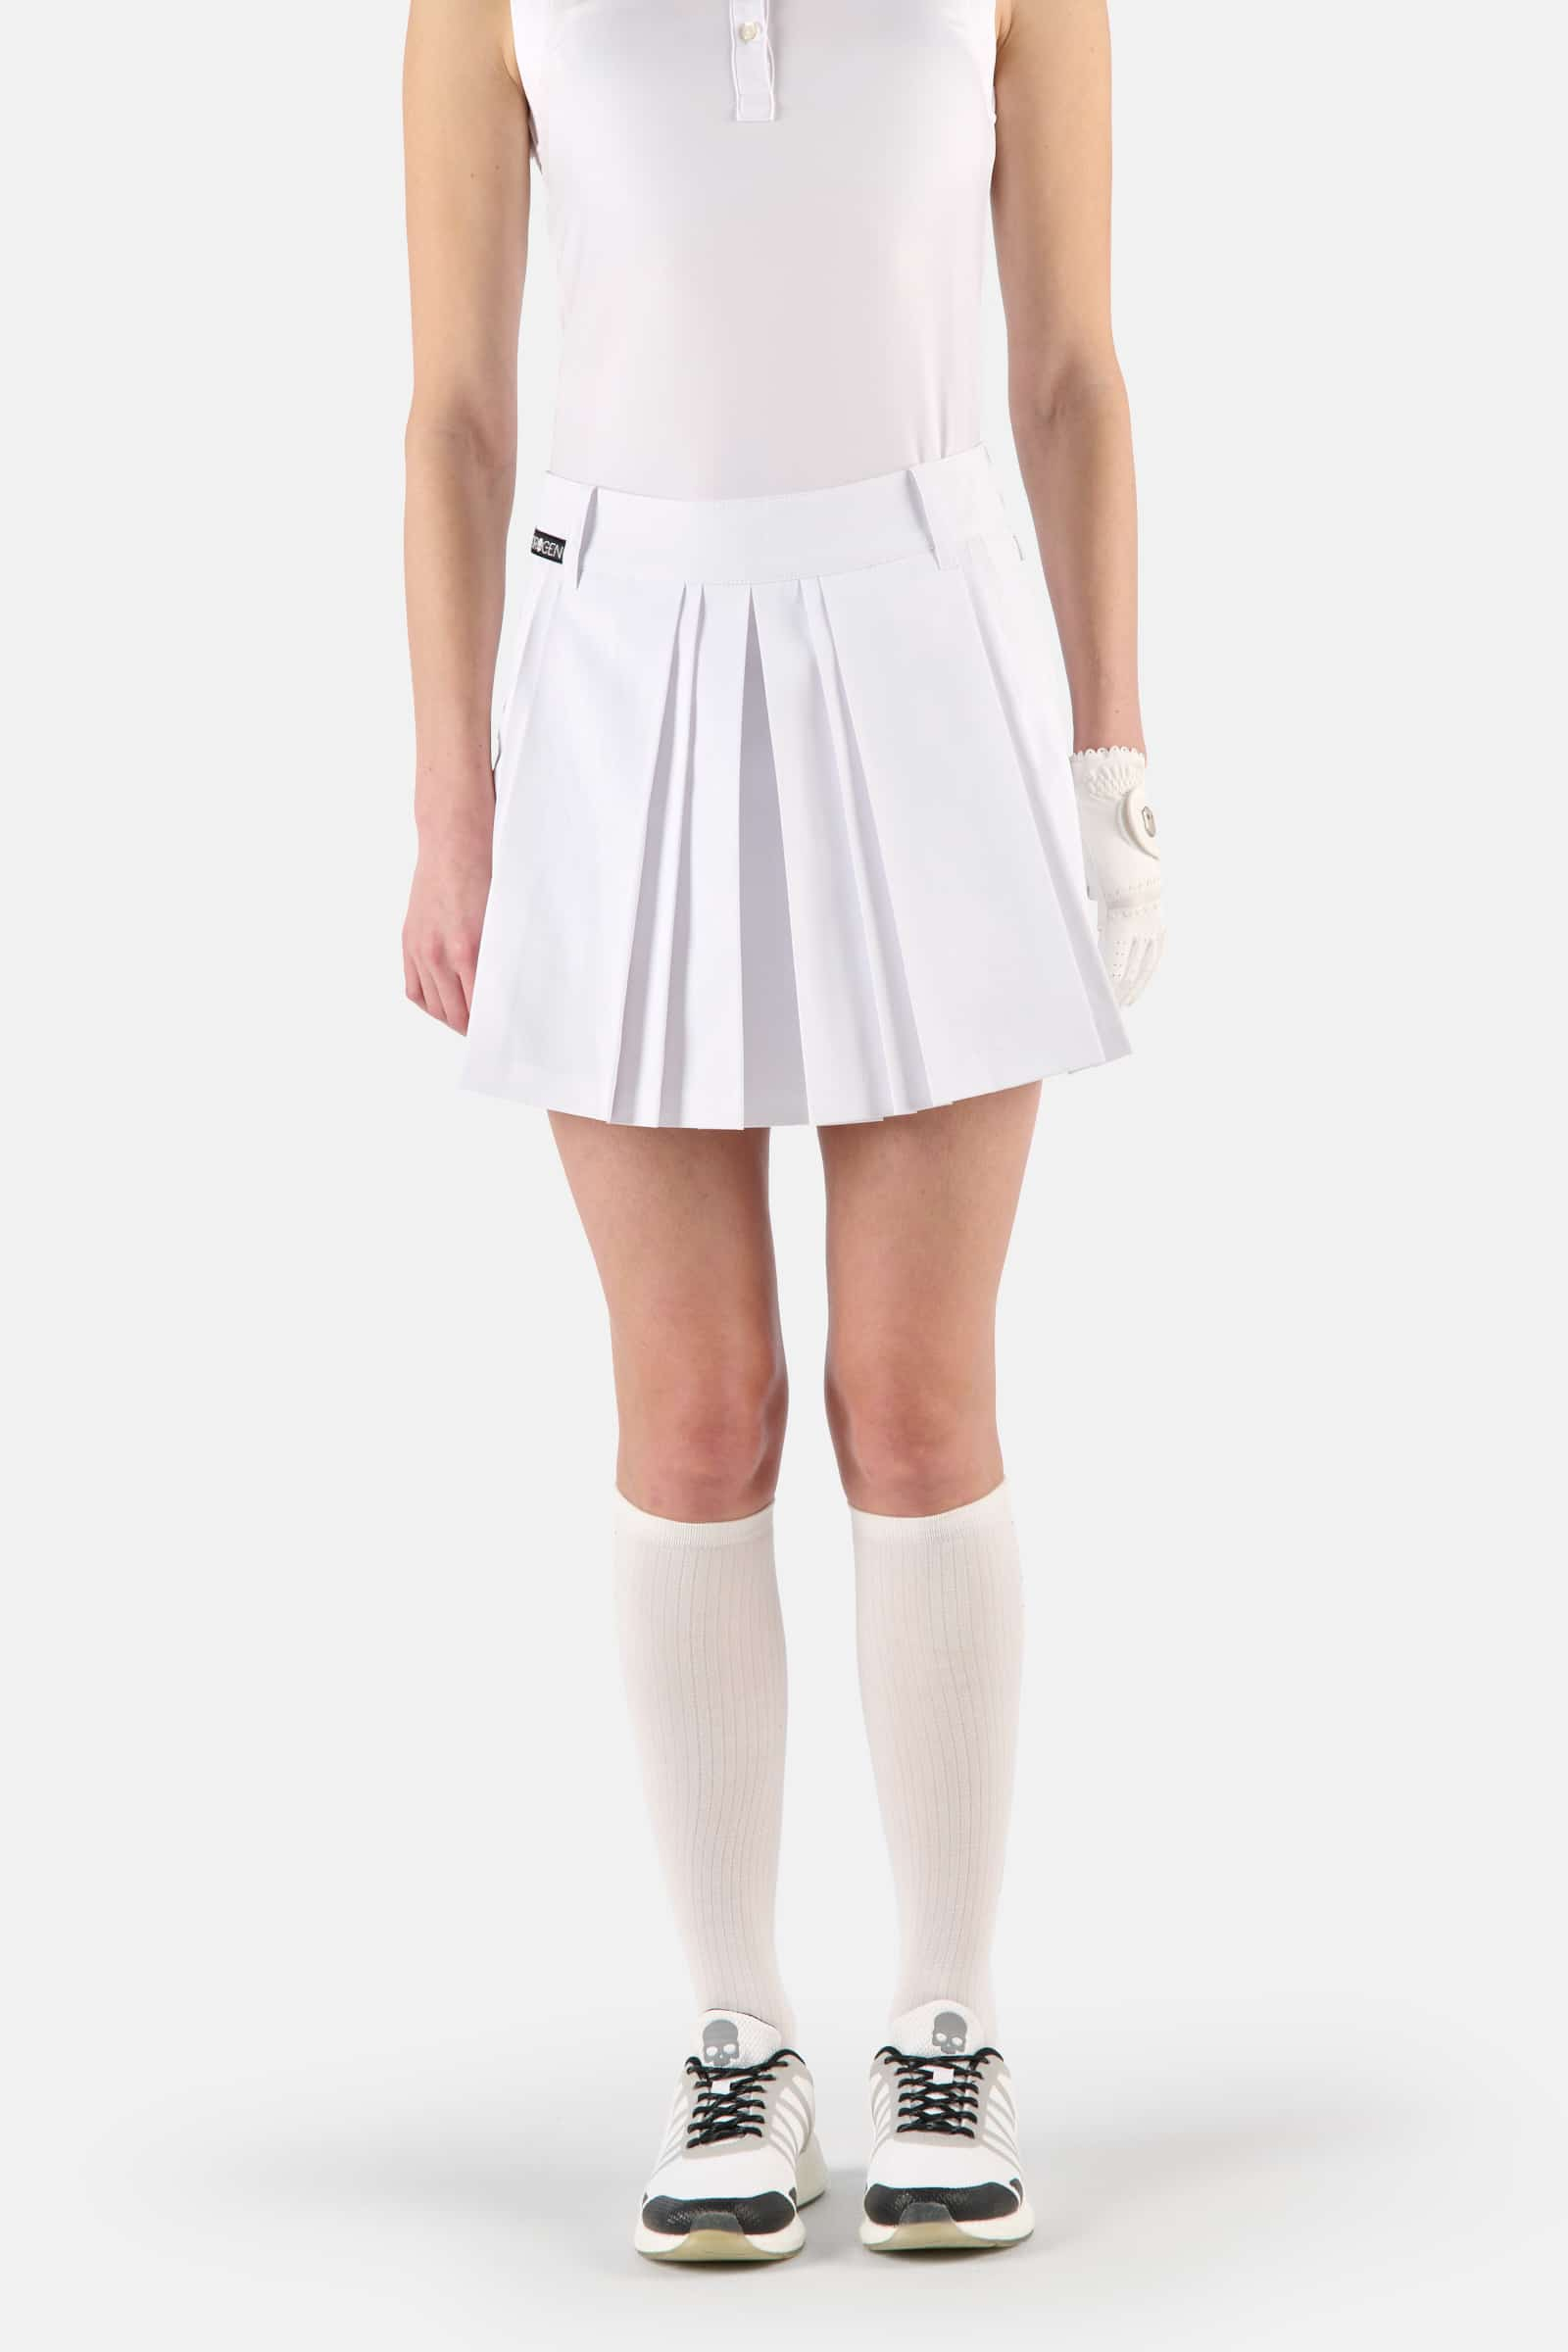 GONNA TECNICA - WHITE - Abbigliamento sportivo | Hydrogen